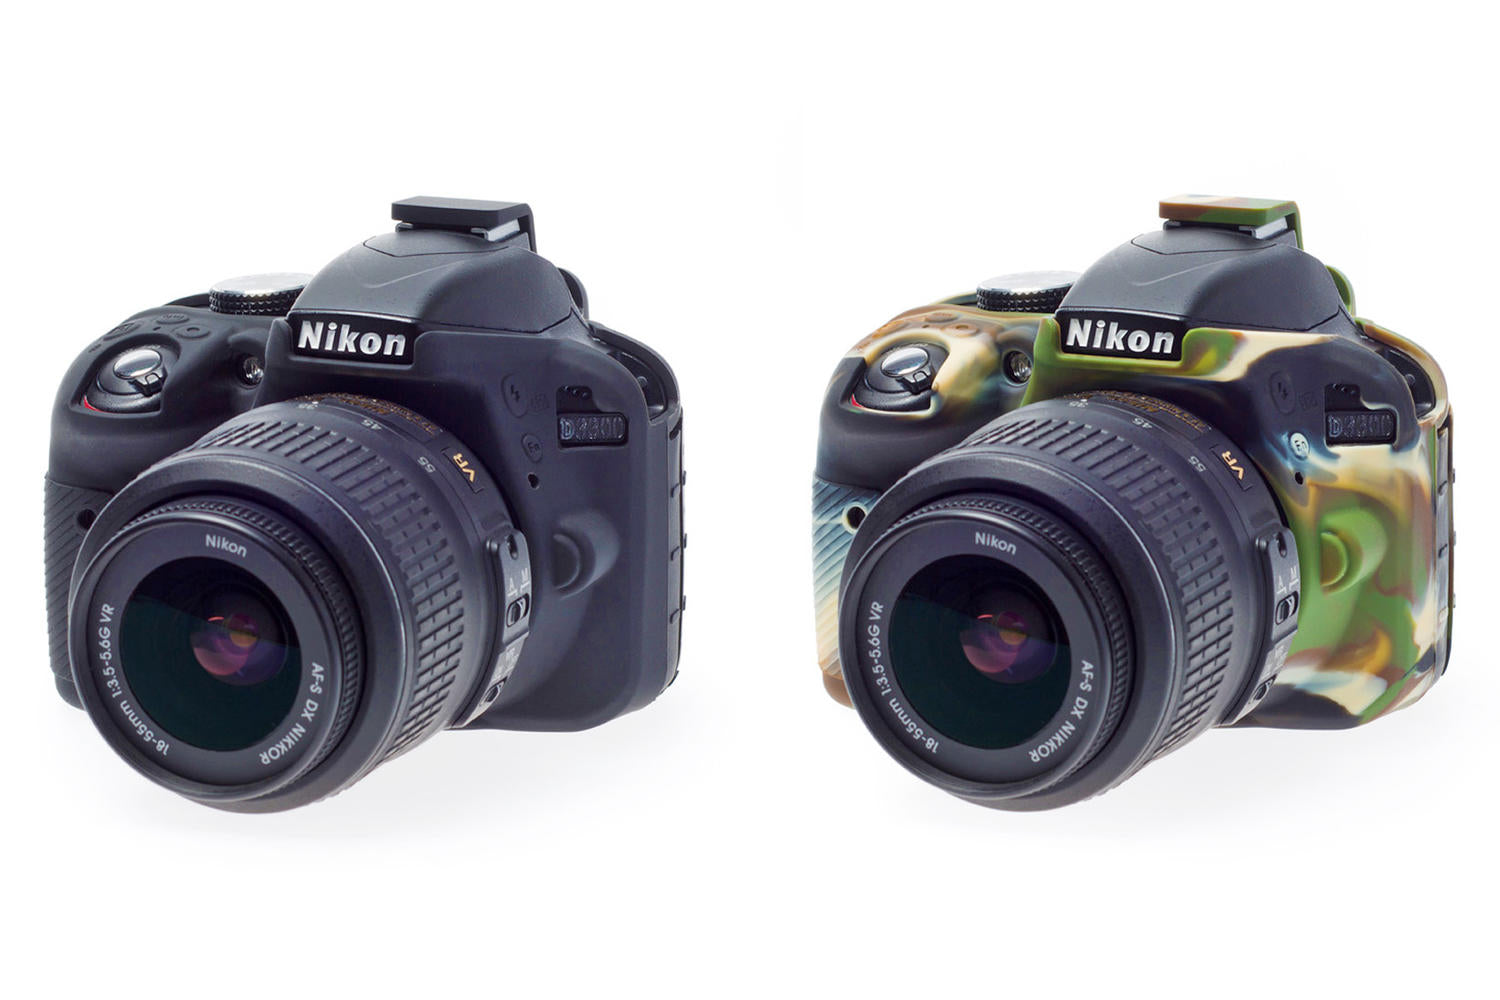 EasyCover Camera Case for Nikon D3300 / D3400 (Black/Yellow/Camo)